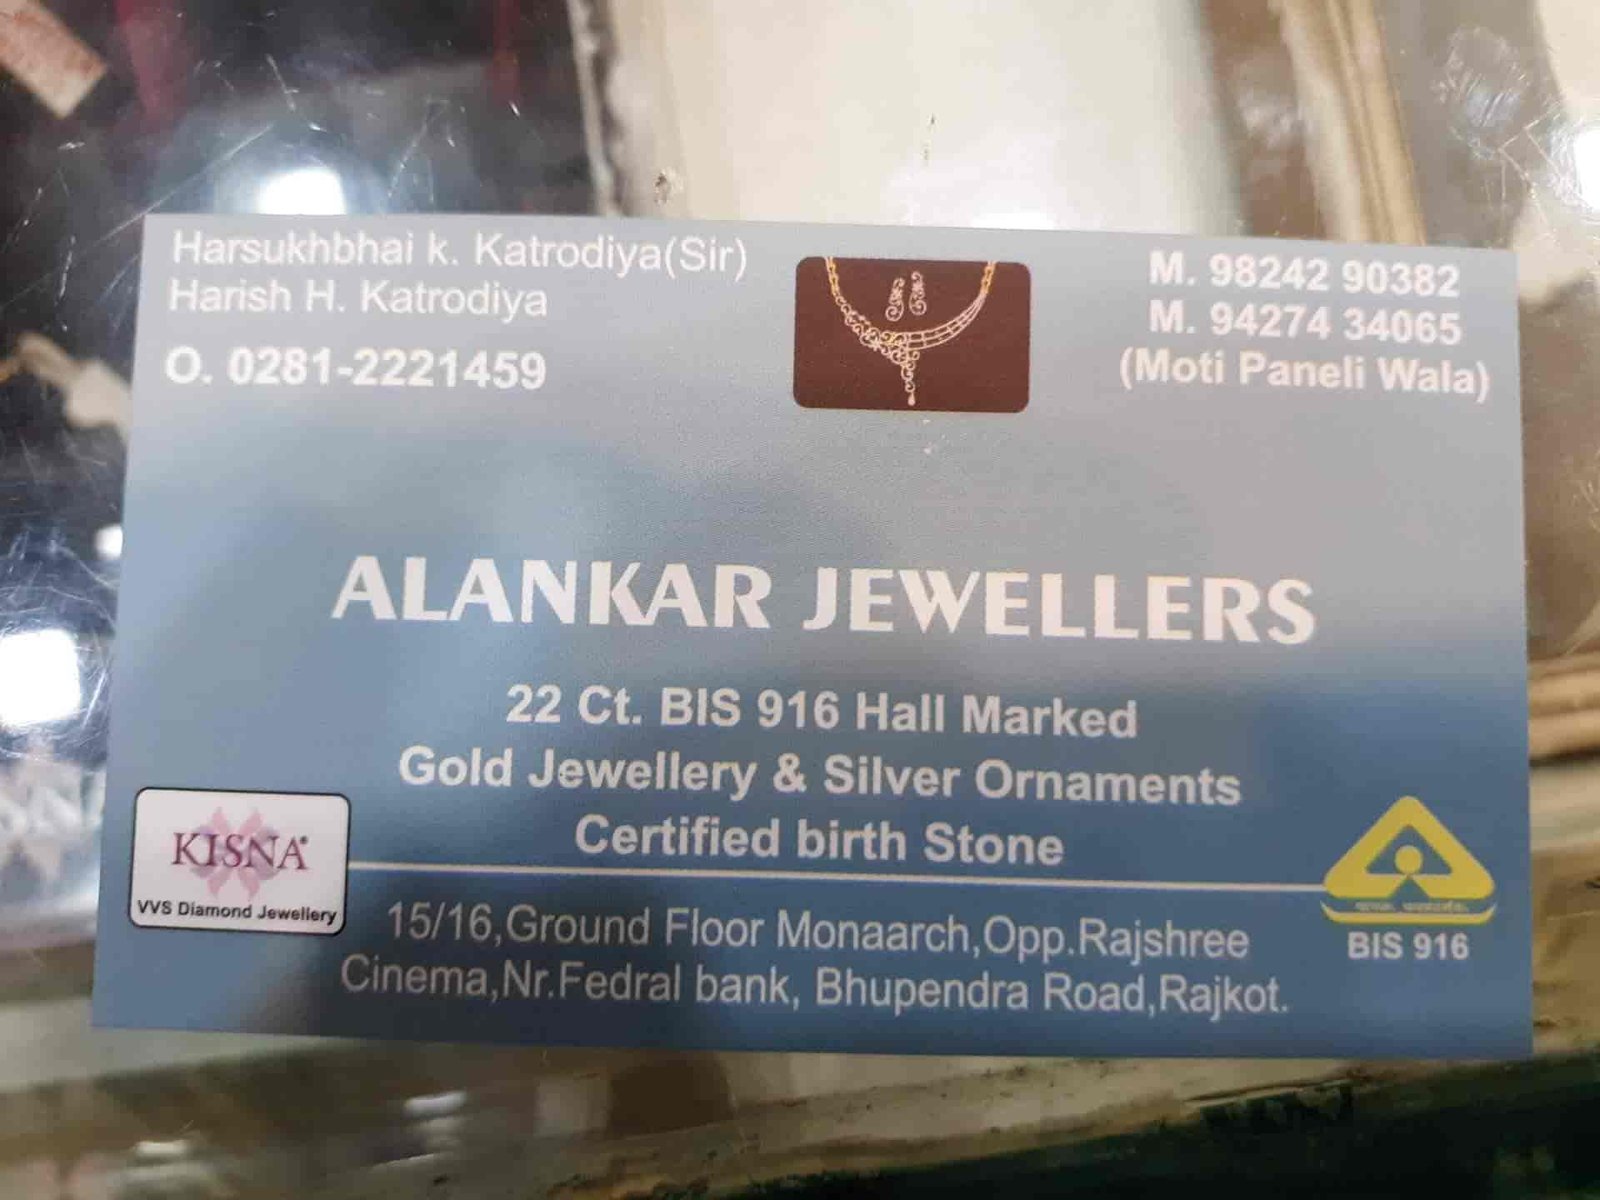 Alankar jewellers